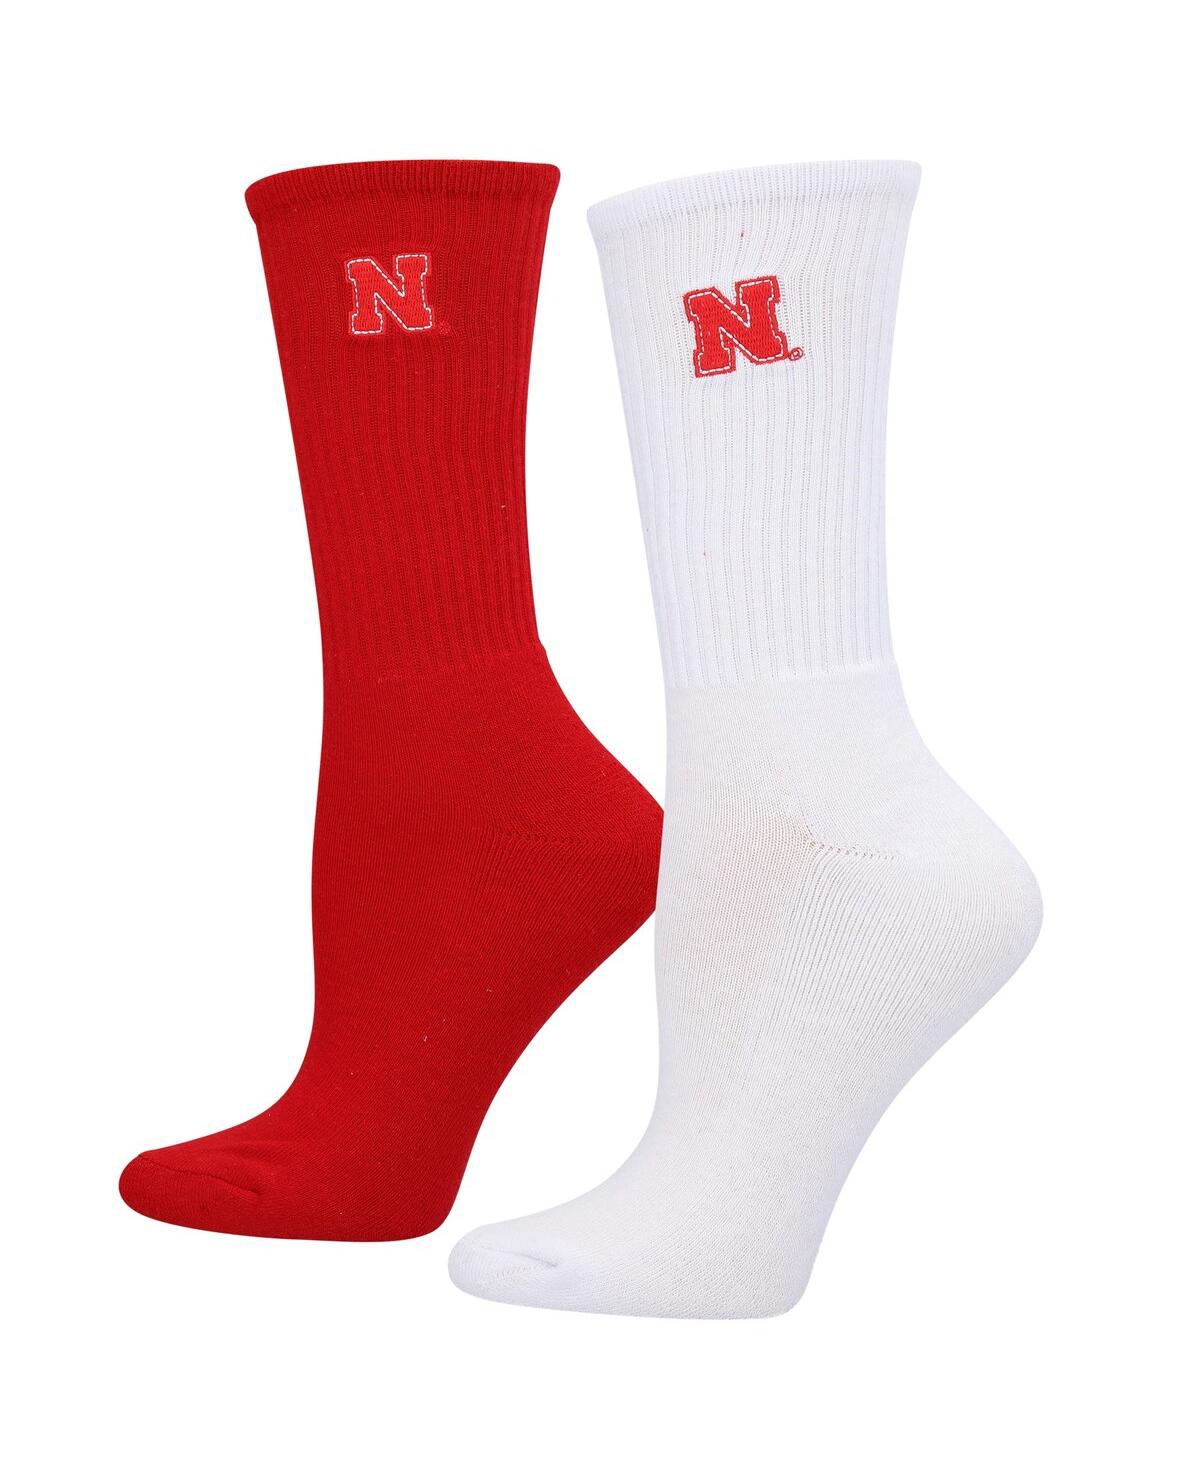 Zoozatz Women's  Red, White Nebraska Huskers 2-pack Quarter-length Socks In Red,white